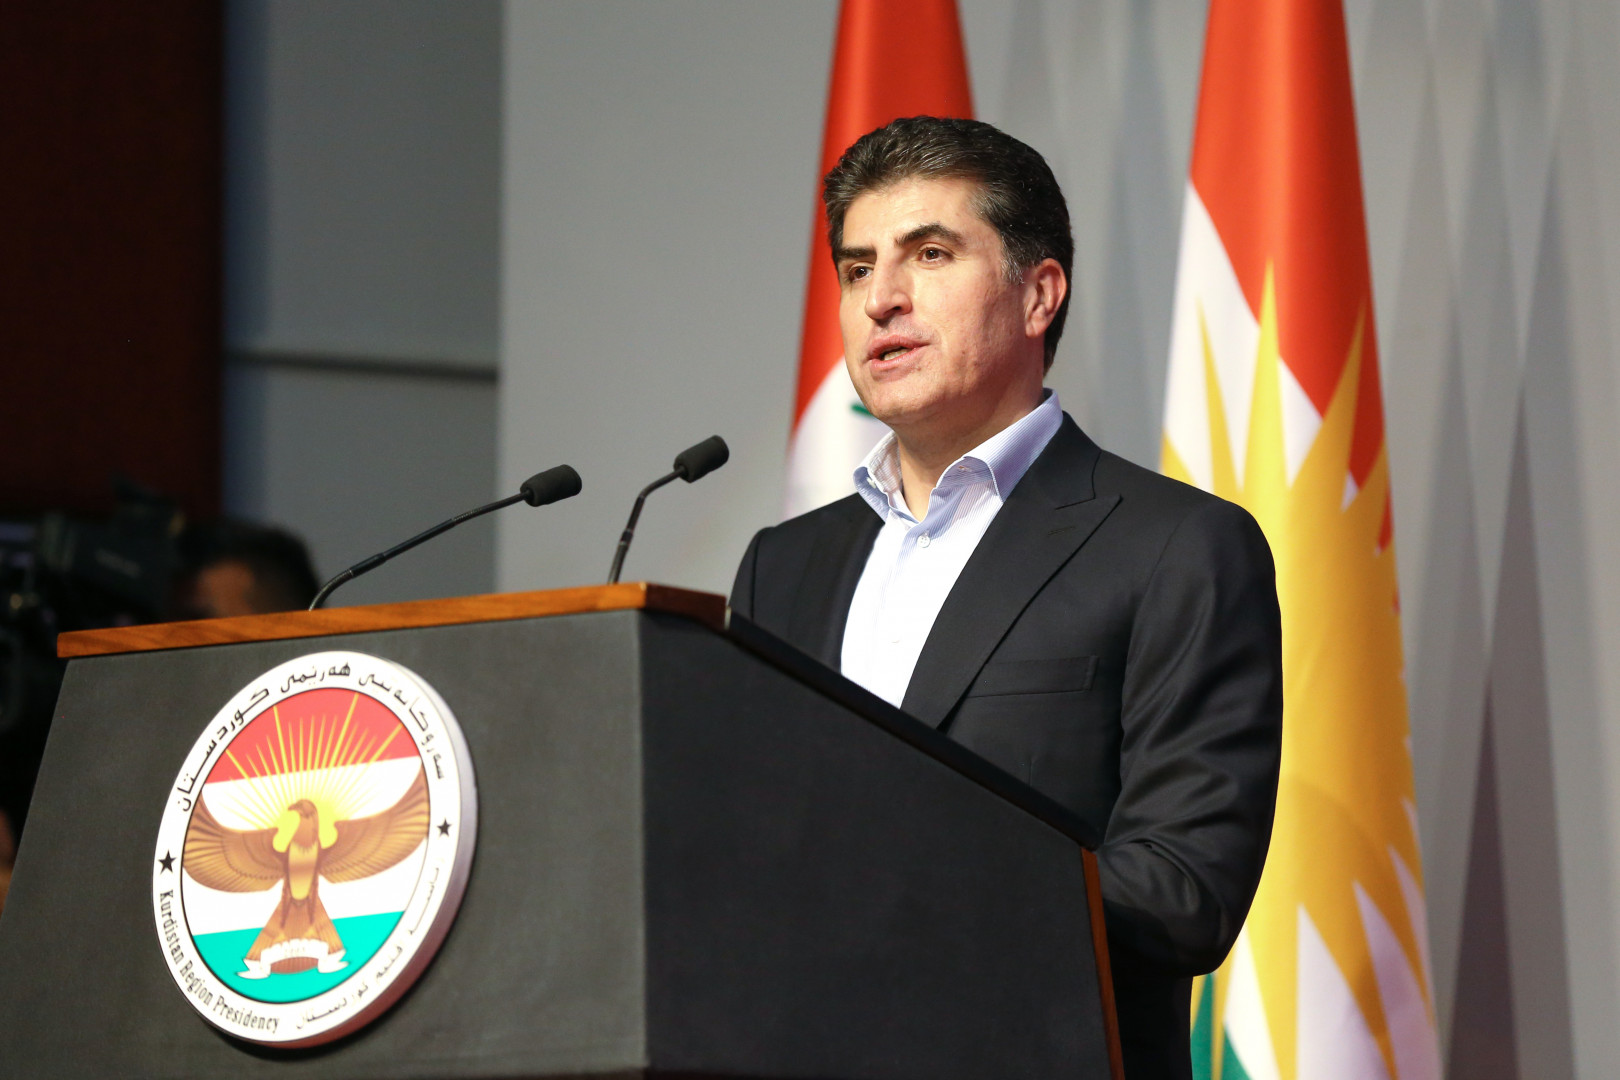 رئيس إقليم كوردستان يرحب بقرار آلماني بتعريف بالابادة الجماعية للايزيديين